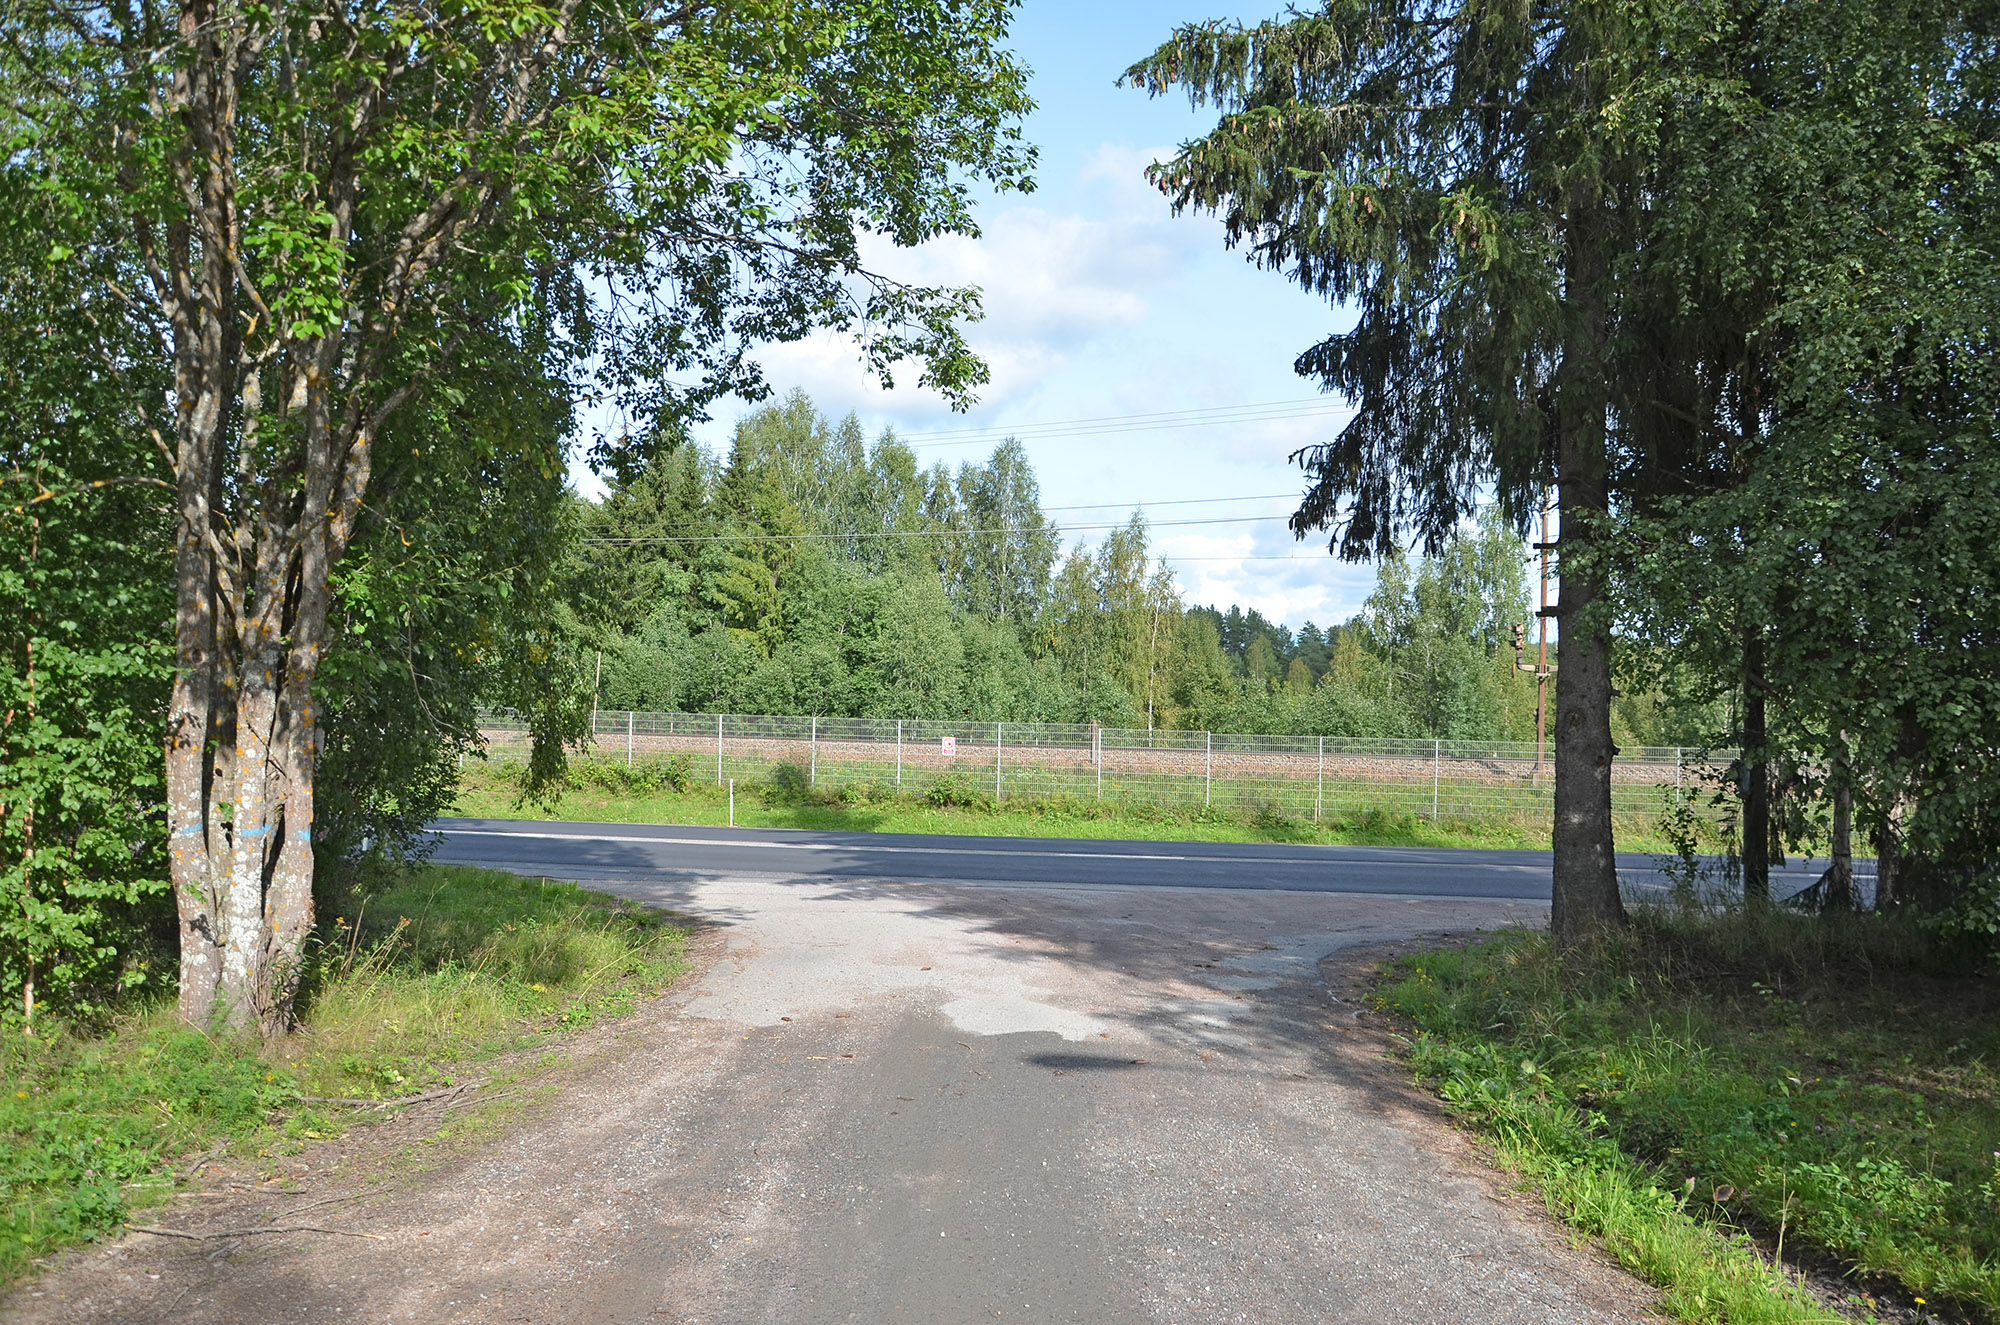 Röste.nu – Nyheter – Ombyggnation av riksväg 83 Bollnäs–Röste inledd 2023